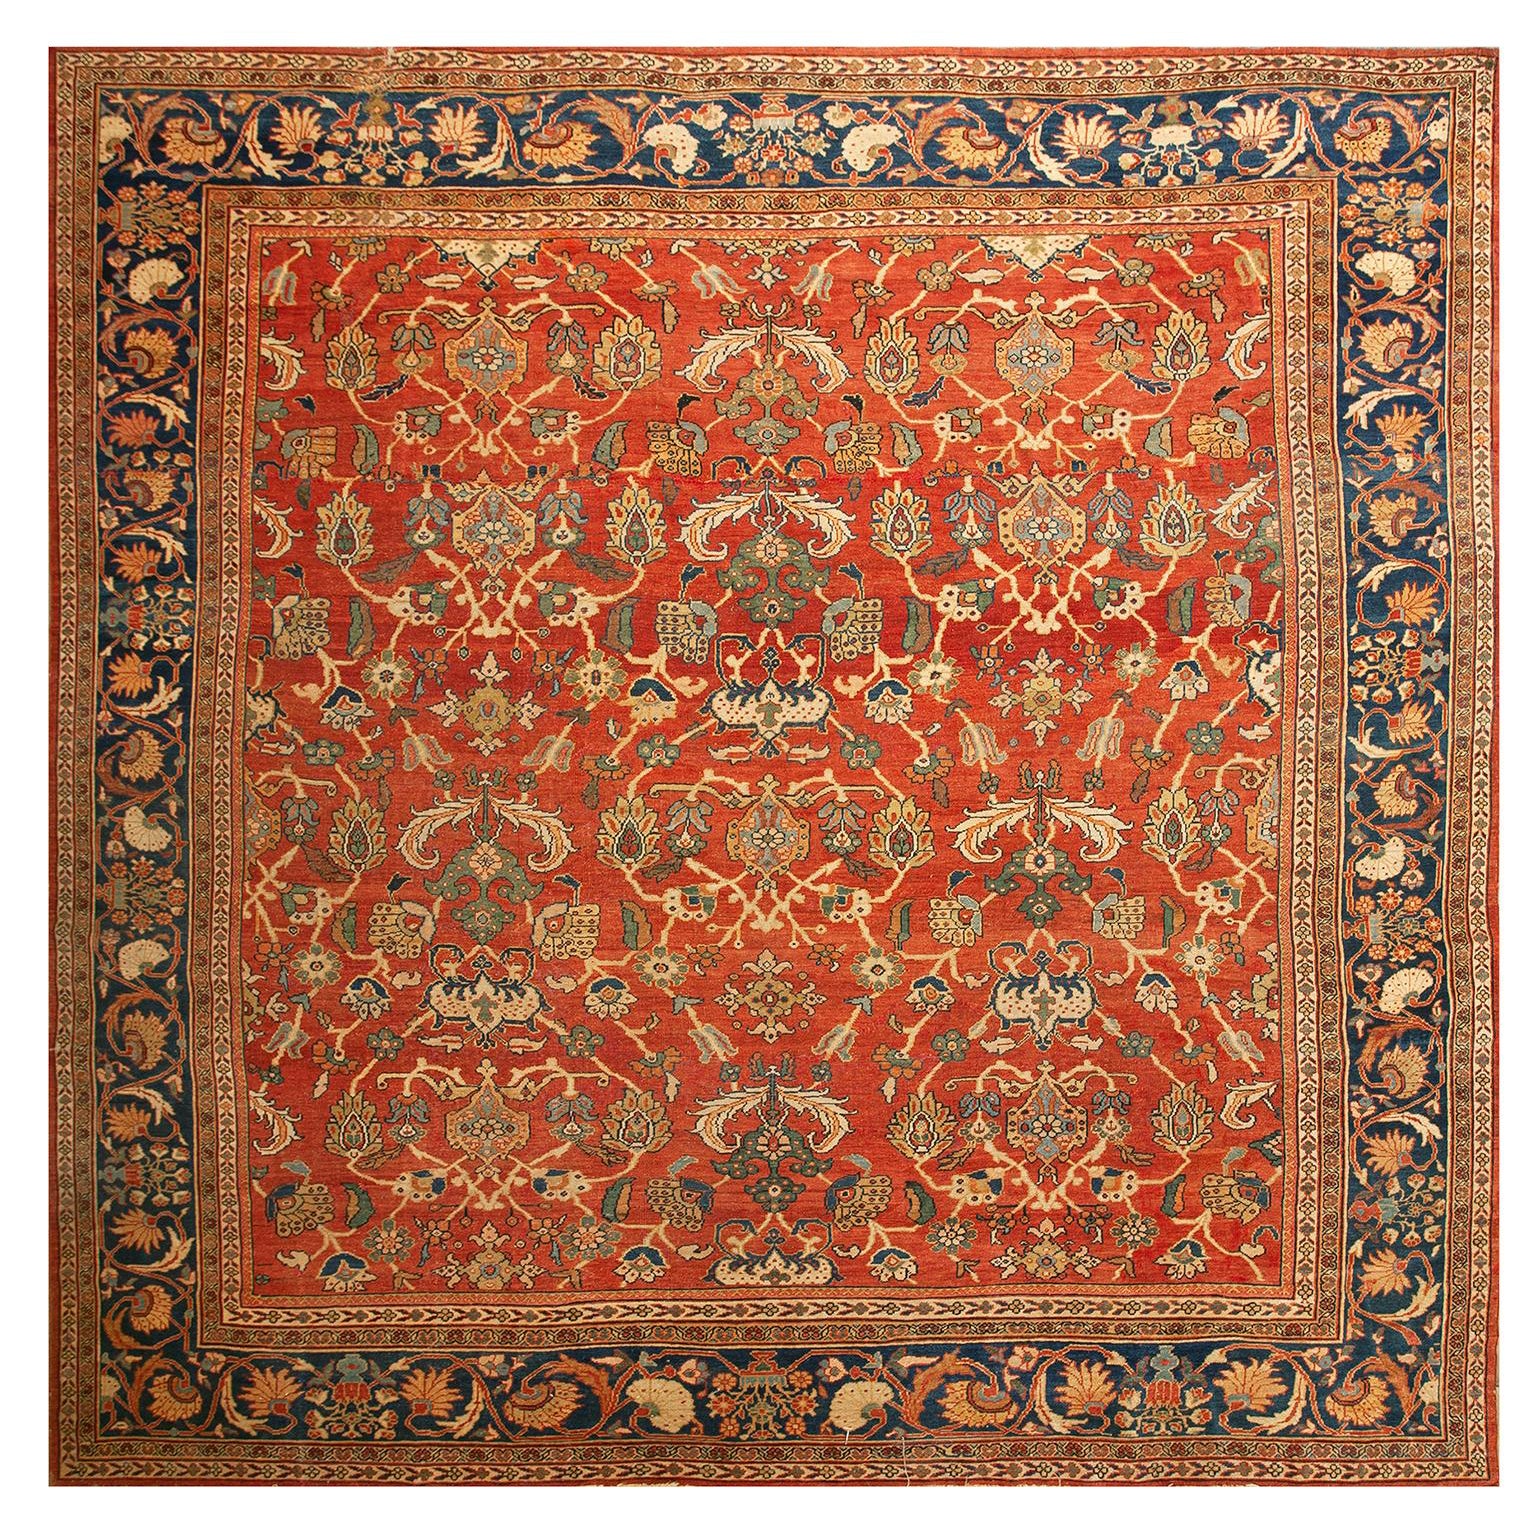 Persischer Sultanabad-Teppich des frühen 20. Jahrhunderts ( 11' 6'' x 12' - 350 x 365)